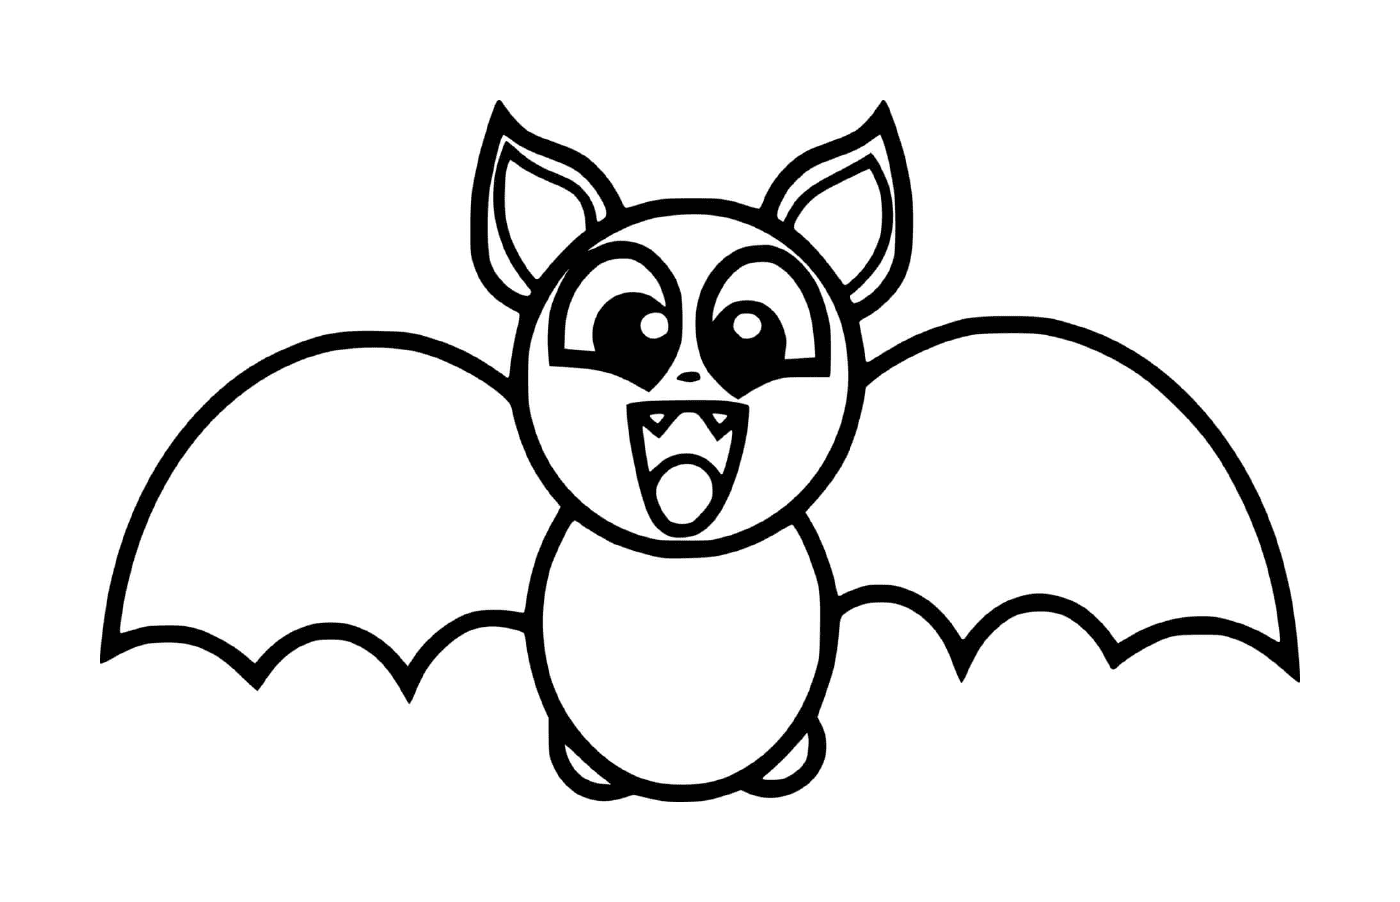  little roaring bat 